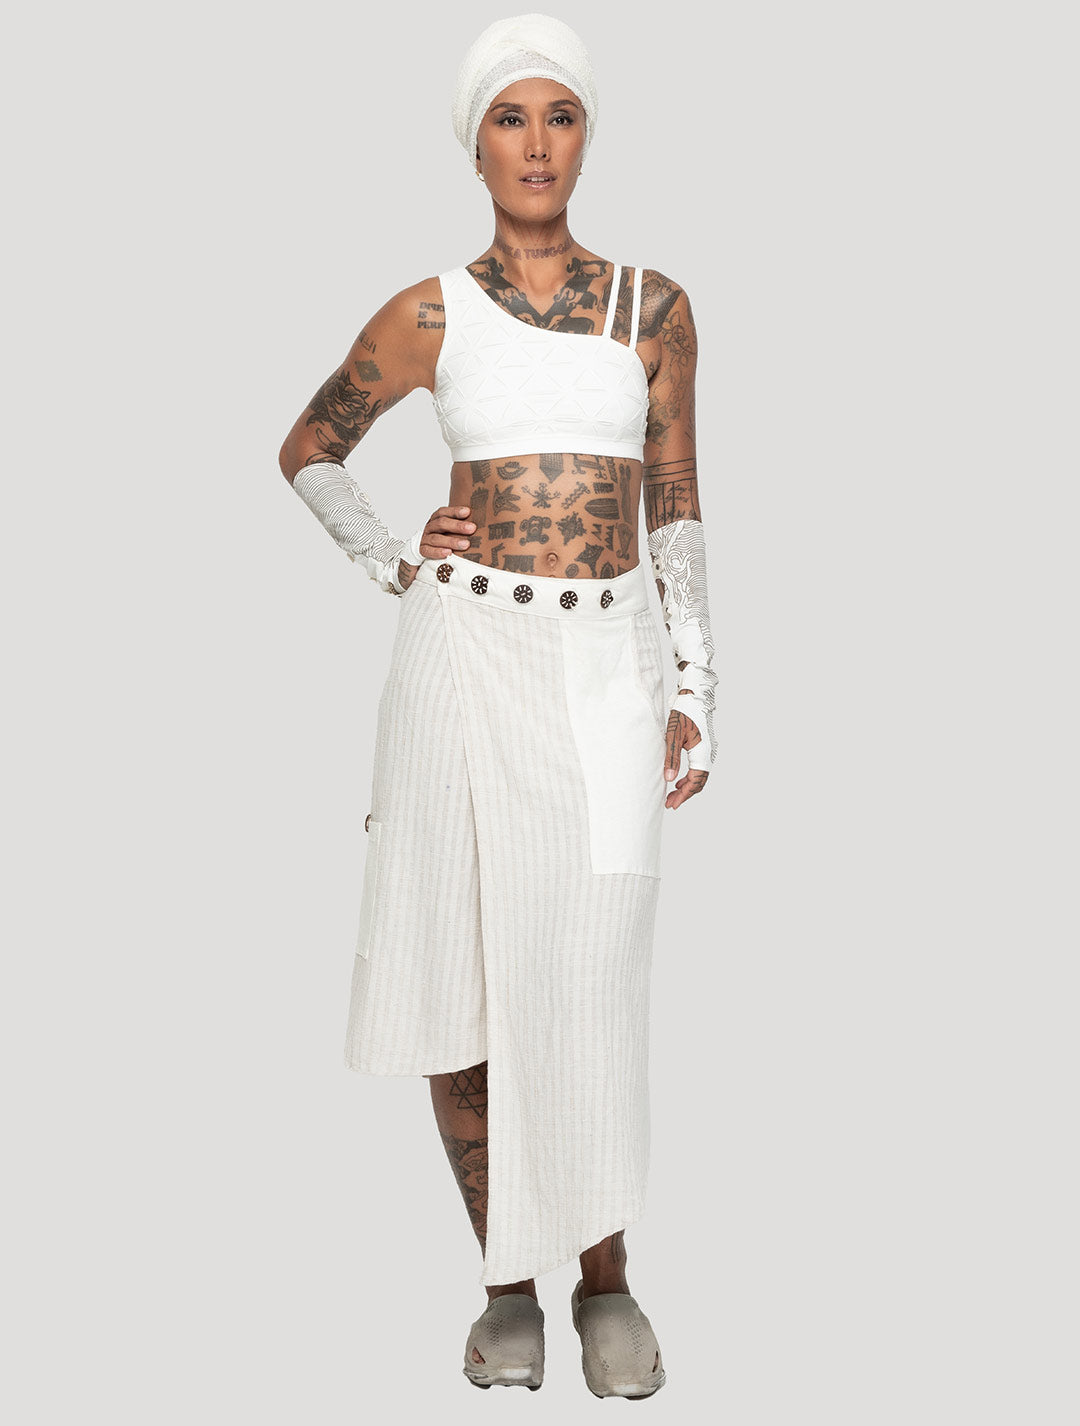 Natural 'Hera' Asymmetrical Wrap Skirt - Psylo Fashion